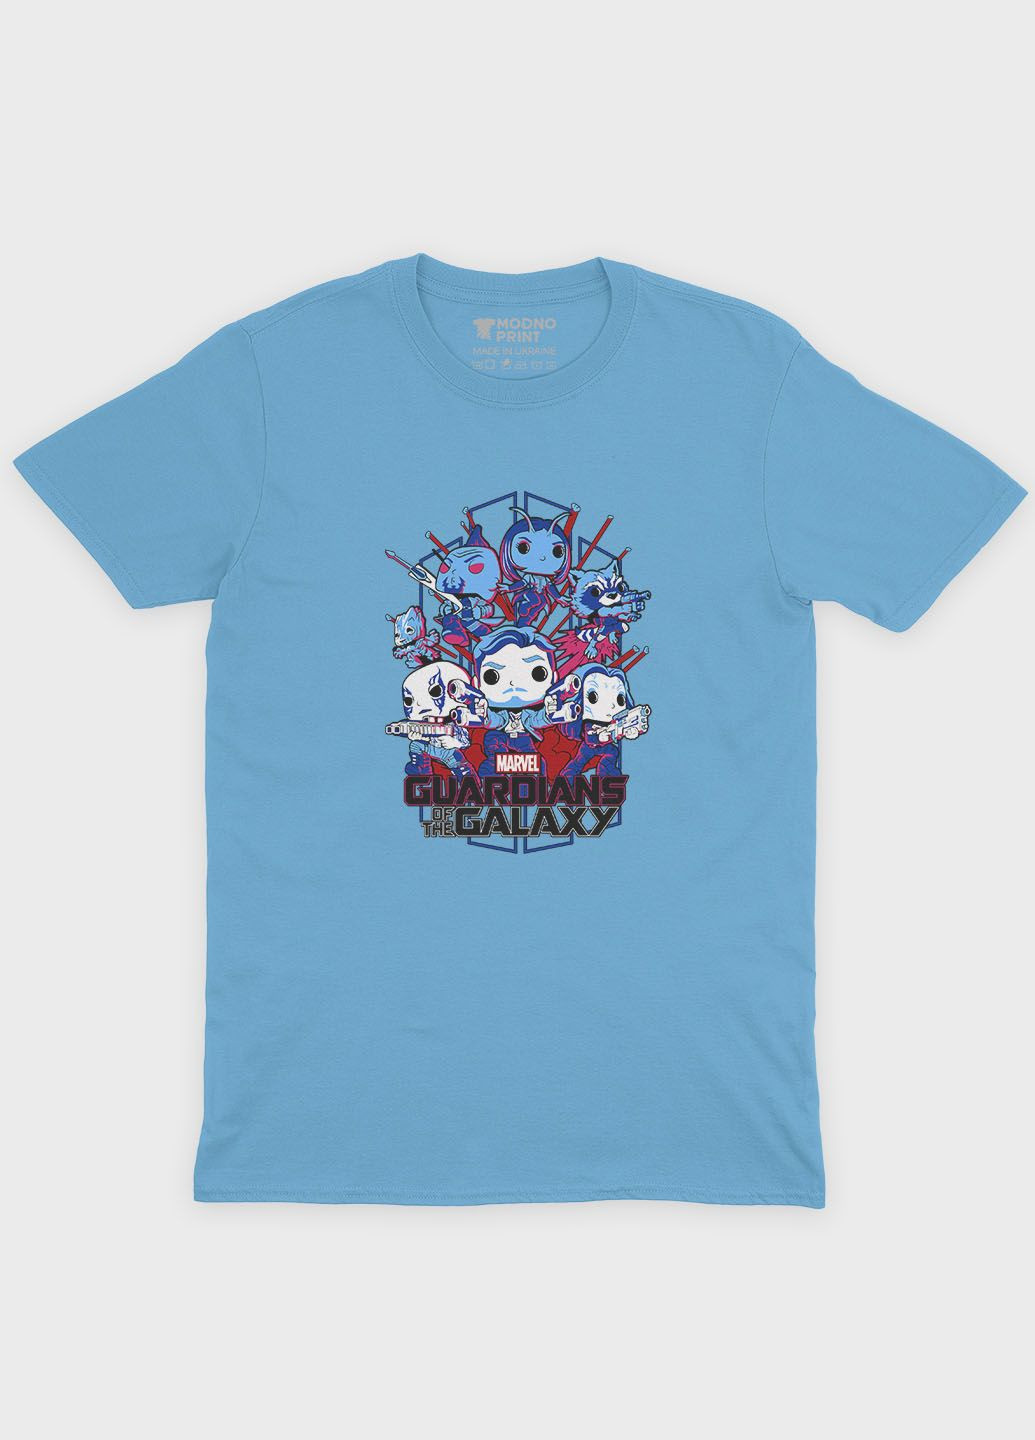 Голубая демисезонная футболка для девочки с принтом супергероев - часовые галактики (ts001-1-lbl-006-017-002-g) Modno